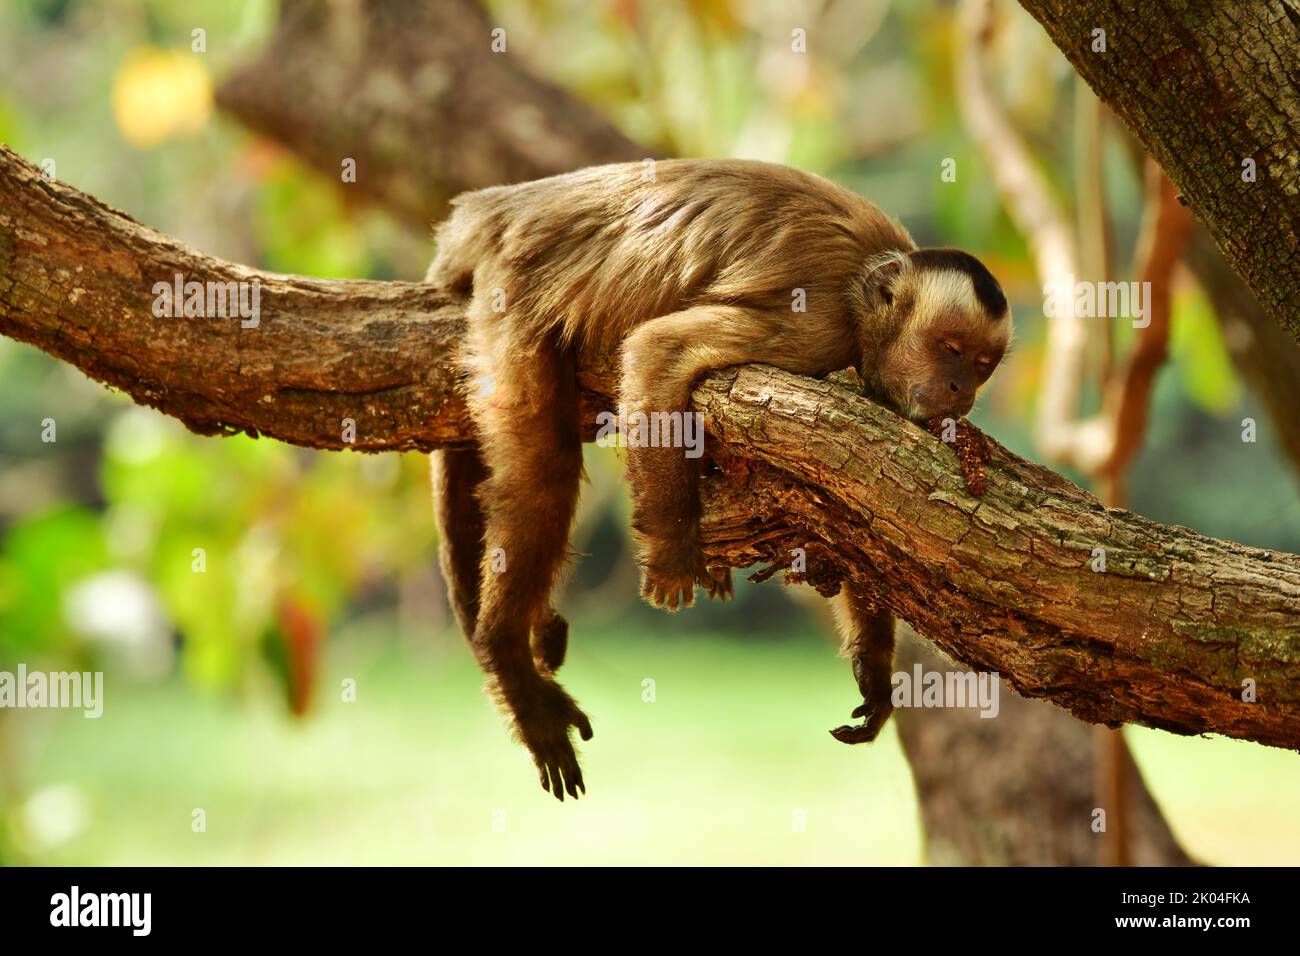 Mono capuchino (Cebus apella) durmiendo en una rama de árbol. Pantanal, Brasil Foto de stock